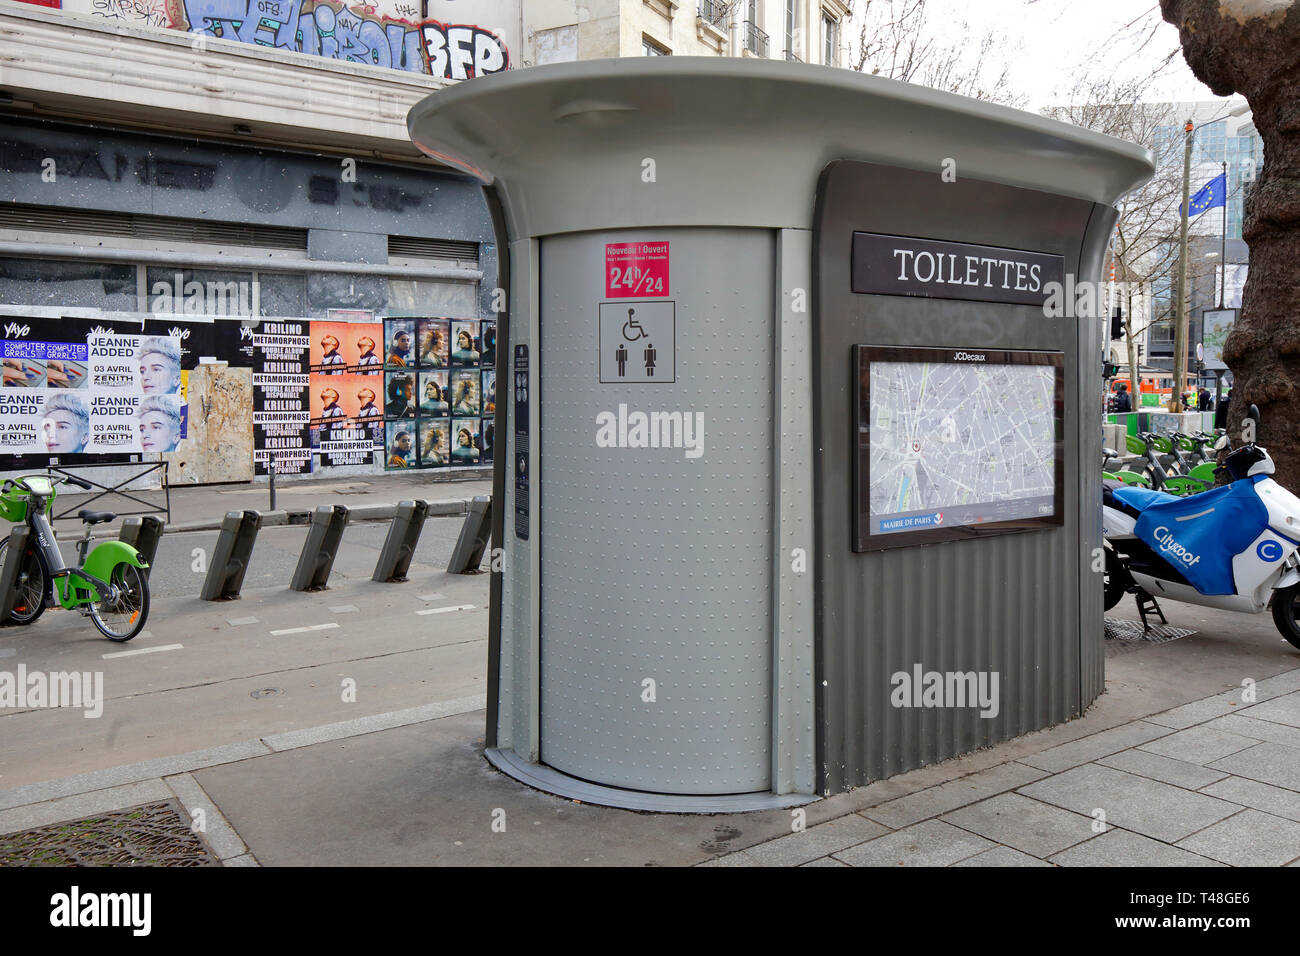 A Sanisette automatique nettoyage des toilettes publiques, toilettes publiques, près de la place de la Bastille, Paris, France. Les installations sont gratuites. Banque D'Images